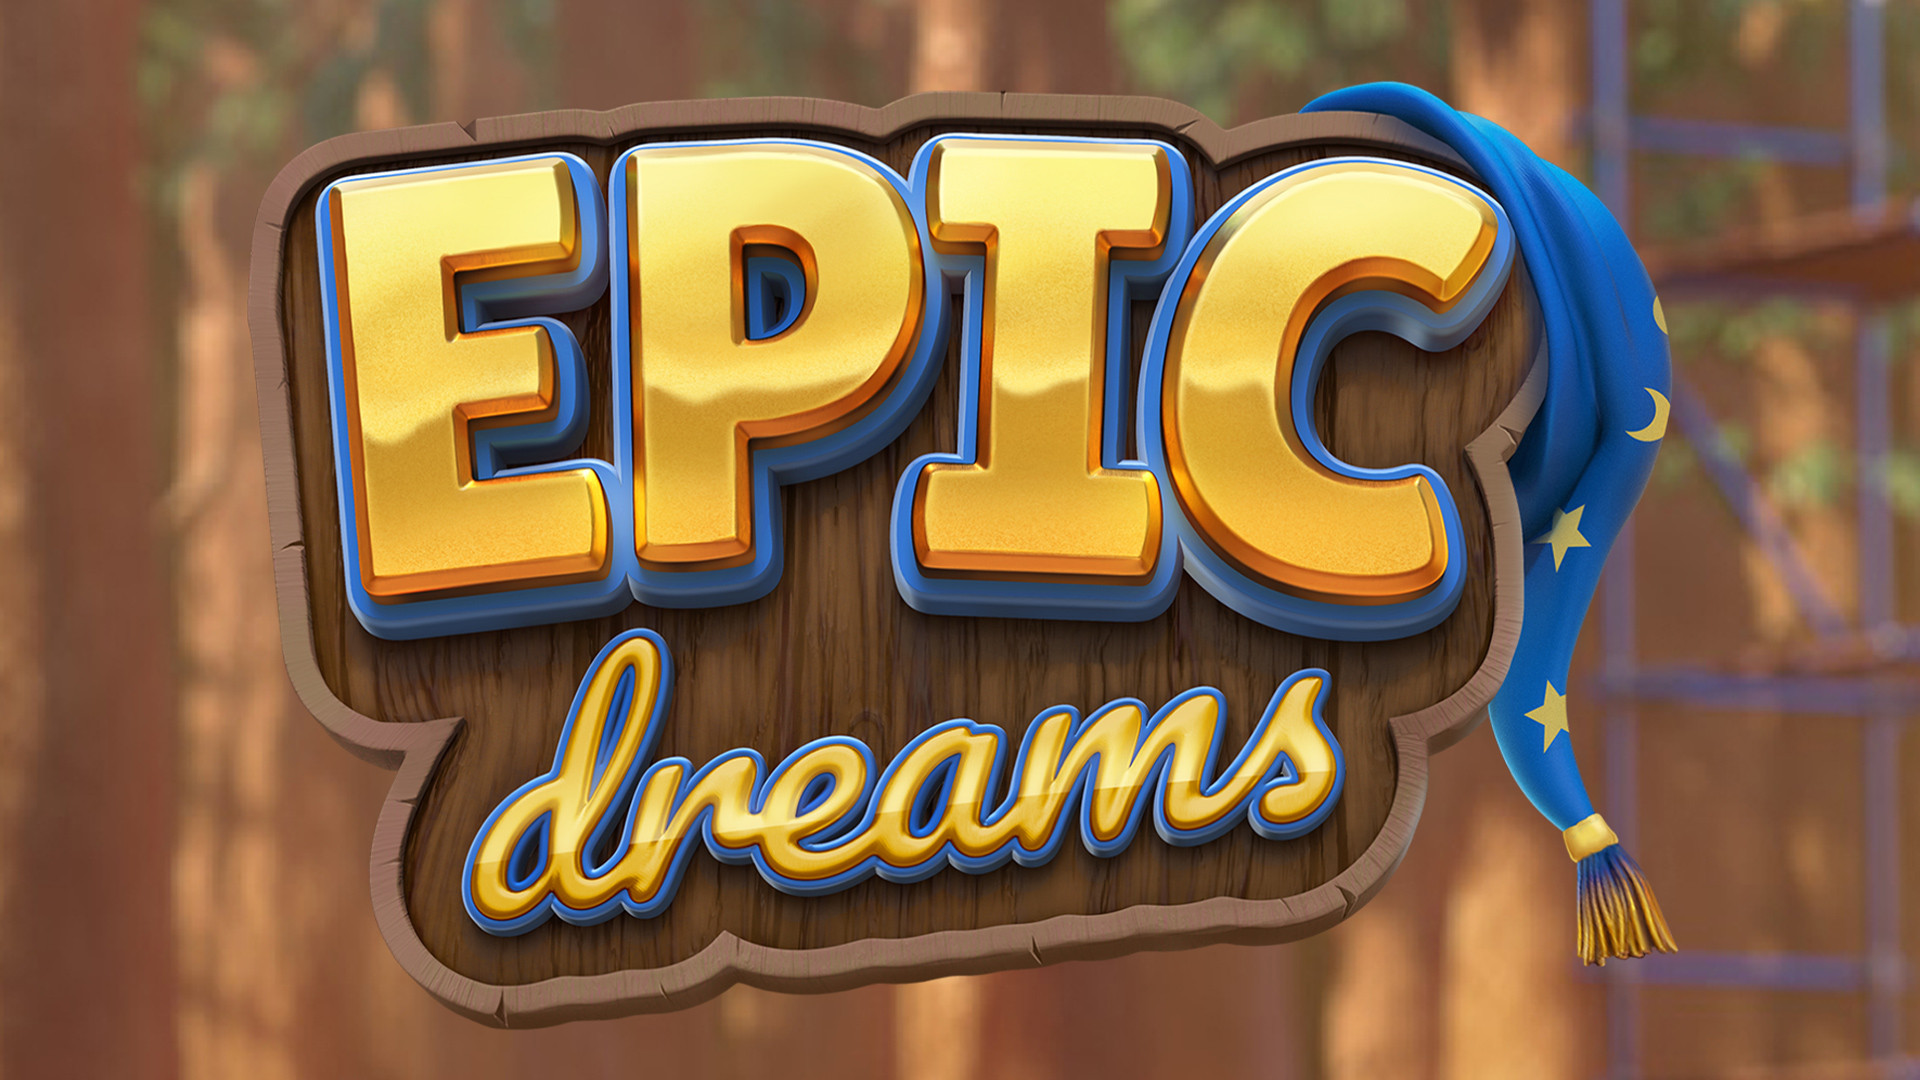 Epic Dreams